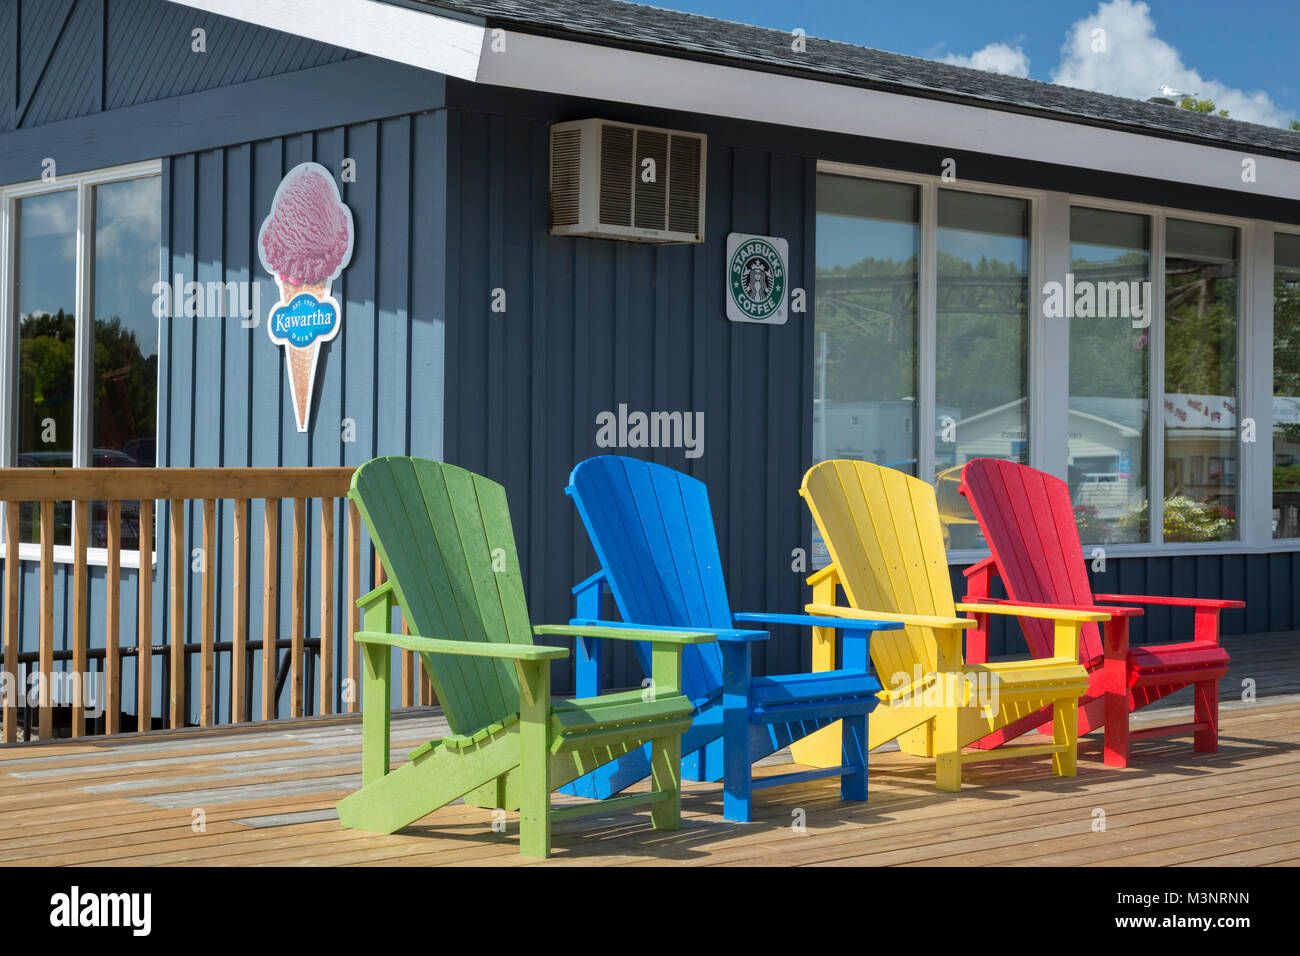 Les couleurs vives des chaises Adirondack sur terrasse en bois extérieur magasin concession café Starbucks signe journée ensoleillée Georgian Bay Parry Sound Ontario Canada Banque D'Images